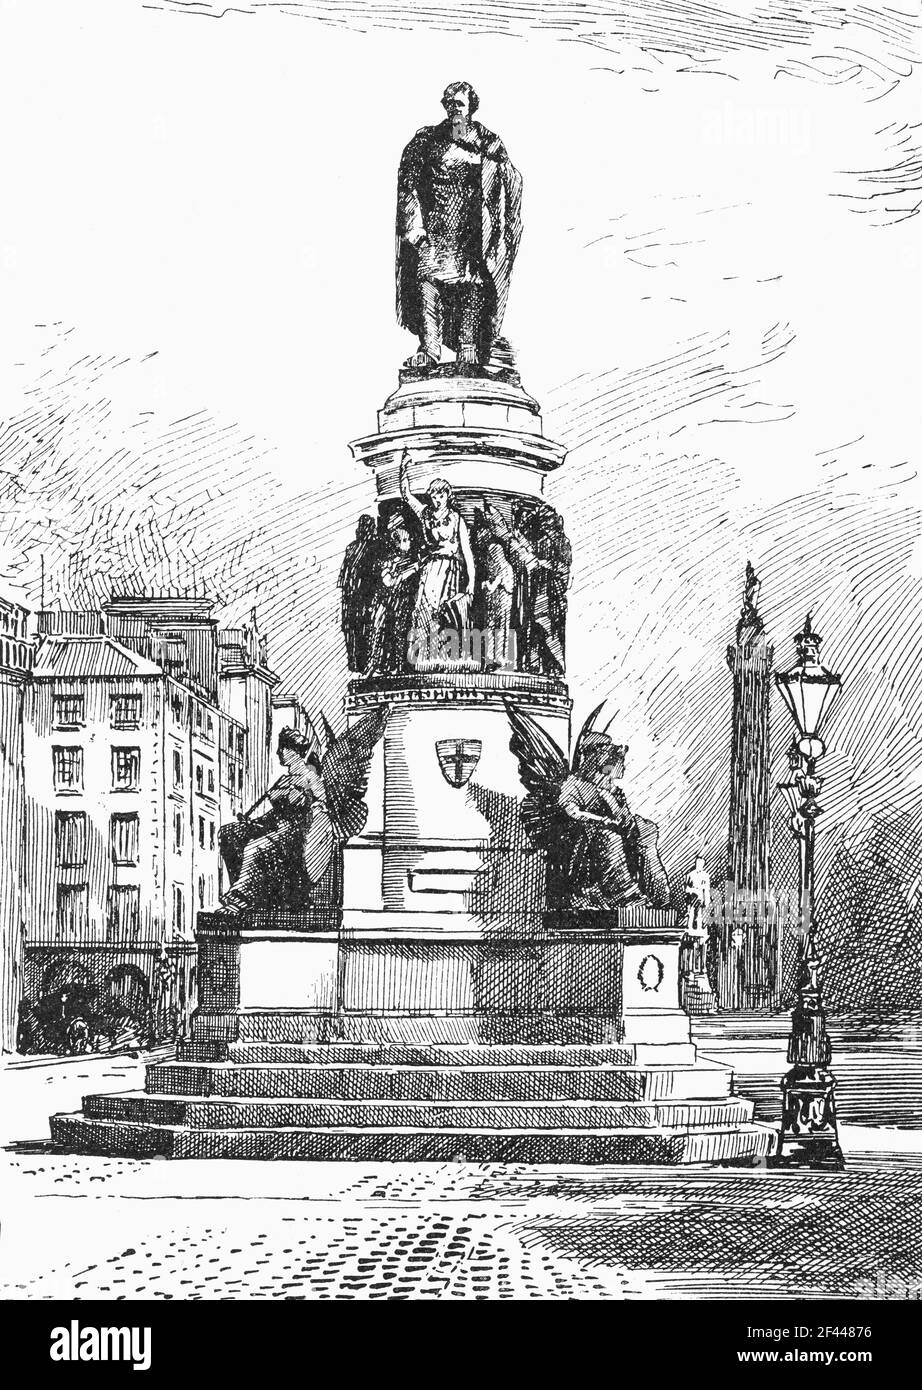 19th. Jahrhundert Illustration der Statue im Auftrag im Jahr 1880 zum Gedenken an Daniel O’Connell (1775-1847), nach dem O'Connell Street wurde nach der irischen Unabhängigkeit umbenannt. O’Connell wurde in Kerry geboren und glaubte, friedliche Taktiken anzuwenden, um Veränderungen zu erreichen. Er kämpfte für die katholische Emanzipation innerhalb des britischen Parlamentariersystems und die Aufhebung des Act of Union. Das Denkmal wurde von John Henry Foley modelliert, der der führende Bildhauer des Tages war, dessen Statue O’Connell und einen Querschnitt von Menschen aus allen Ebenen der irischen Gesellschaft zeigt. Stockfoto